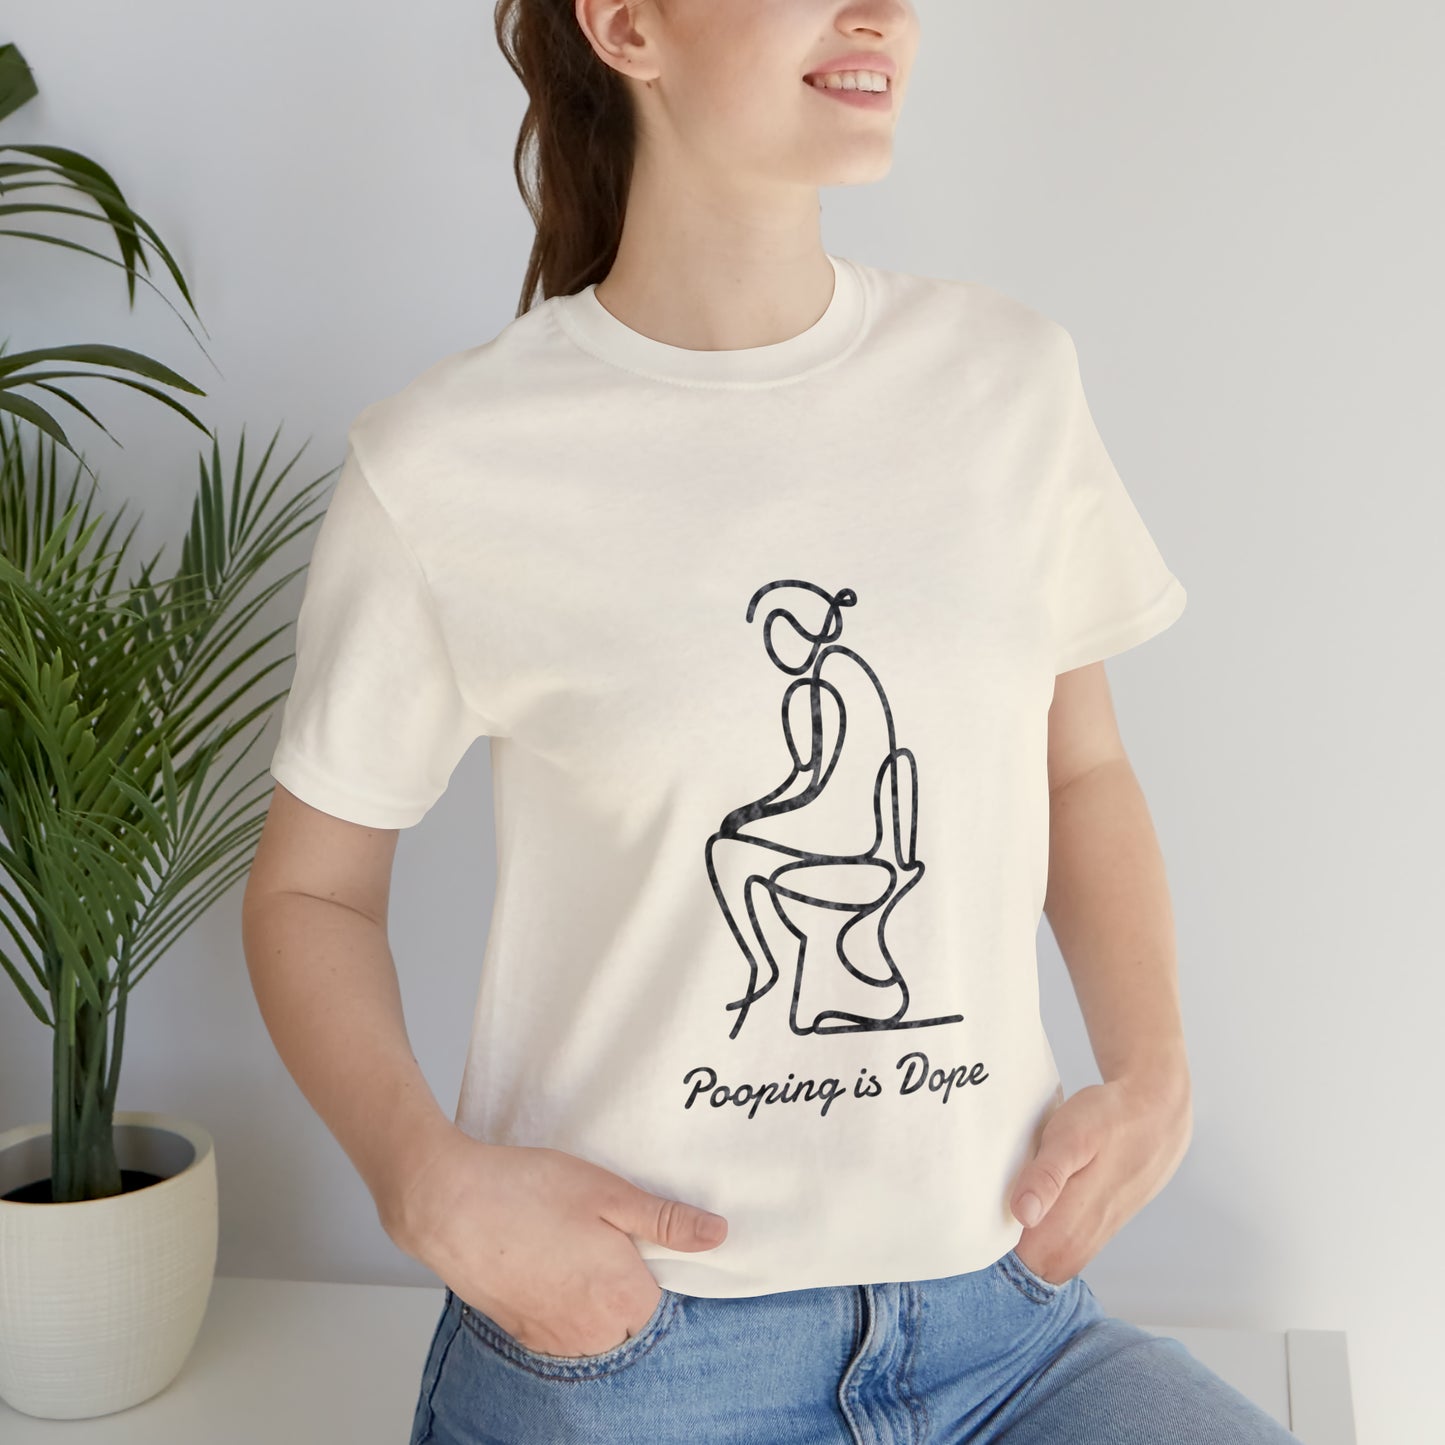 Pooping is Dope (girl version)